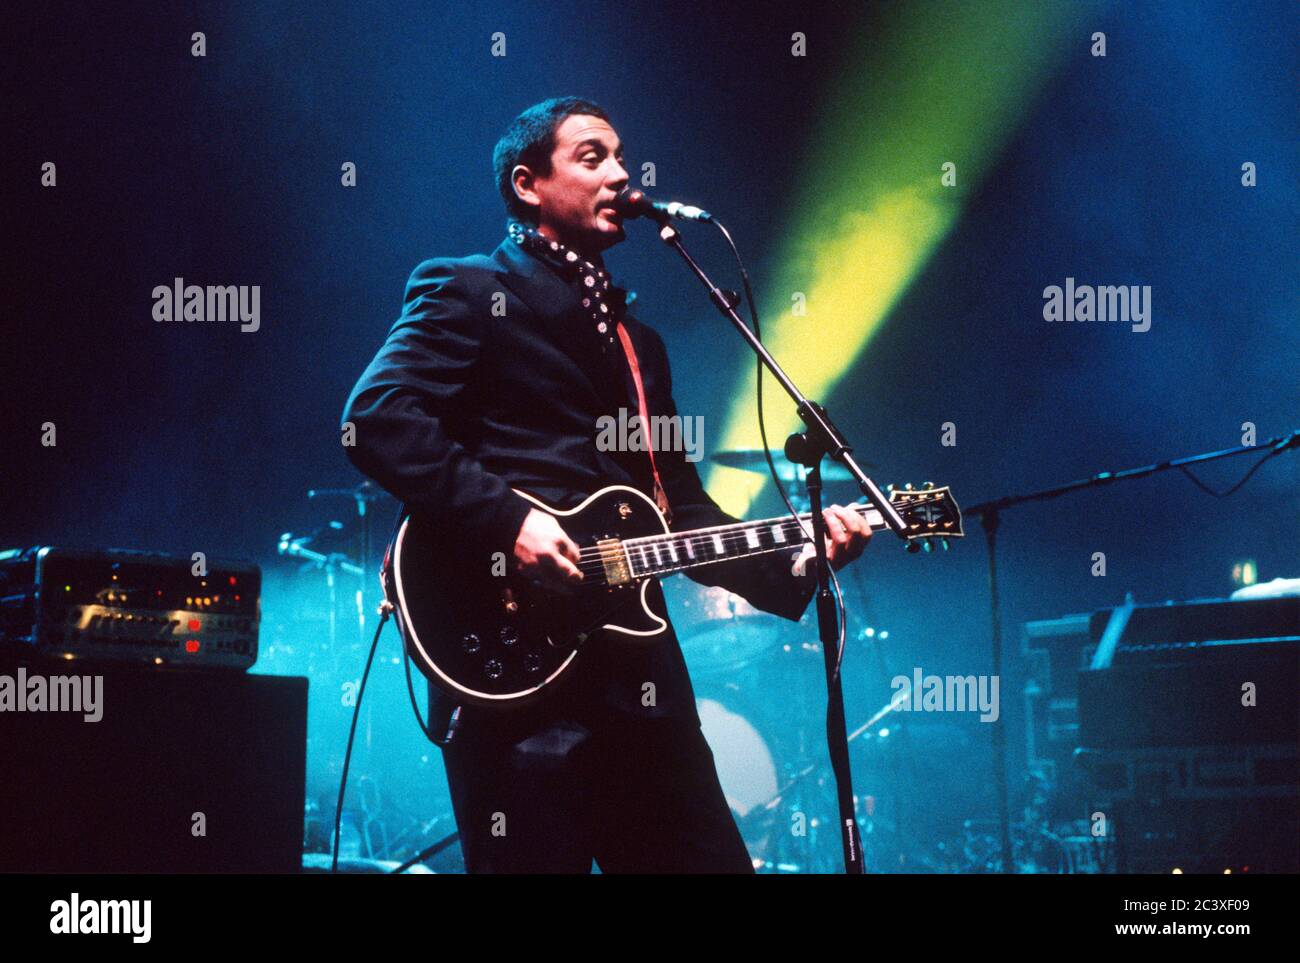 Amusez-vous avec des criminels qui jouent à la Brixton Academy octobre 1999. Brixton, Londres, Angleterre, Royaume-Uni. Banque D'Images